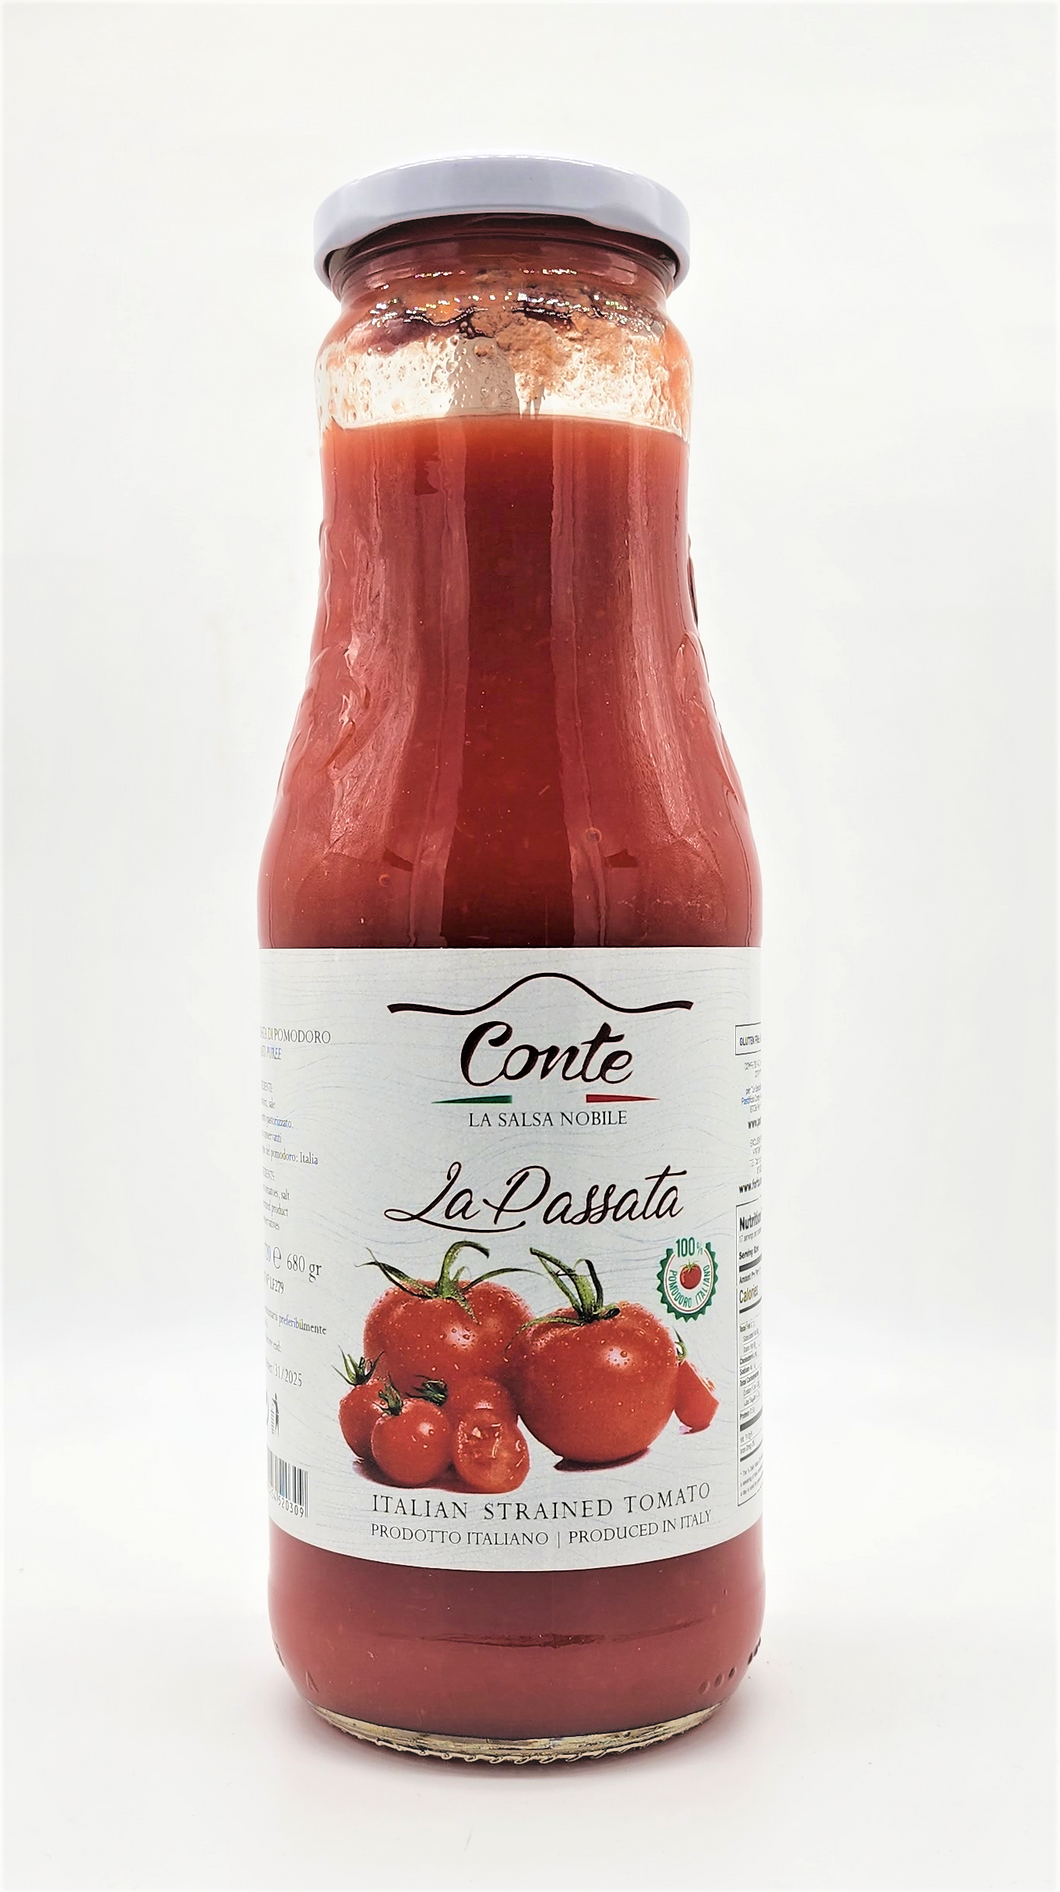 Conte Passata di Pomodoro Strained Fresh Tomatoes Puree Jar 100% from alabria - 24.3 oz